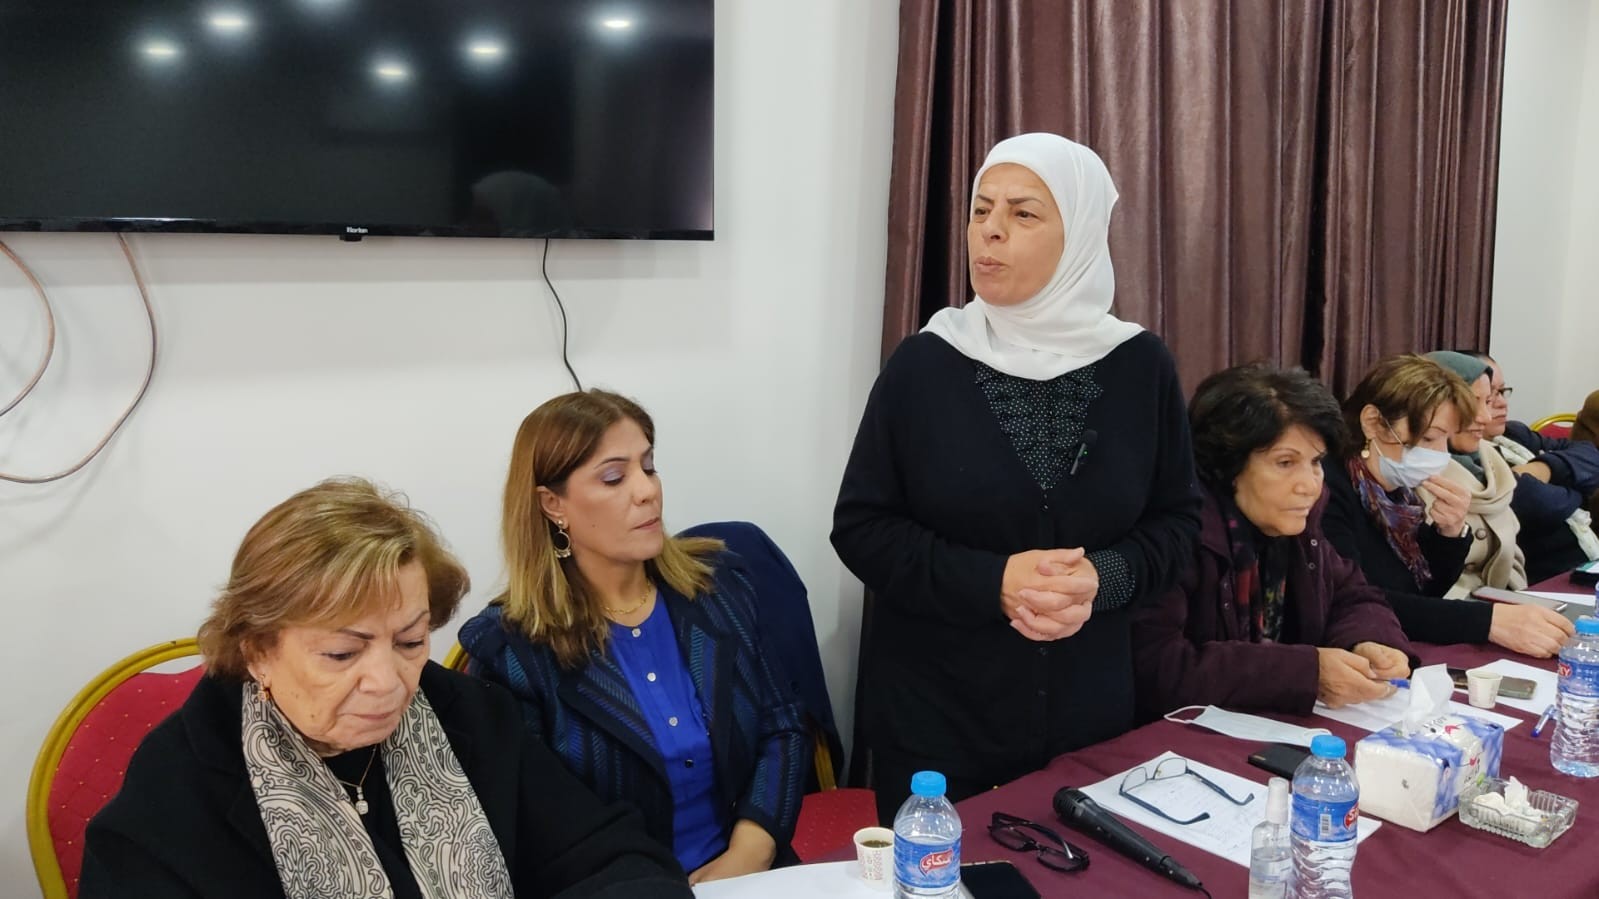 الاتحاد العام للمرأة الفلسطينية في المحافظات الجنوبية وفي الضفة الغربية يلتقيان في سلسلة اجتماعات في قطاع غزة 32.jpg